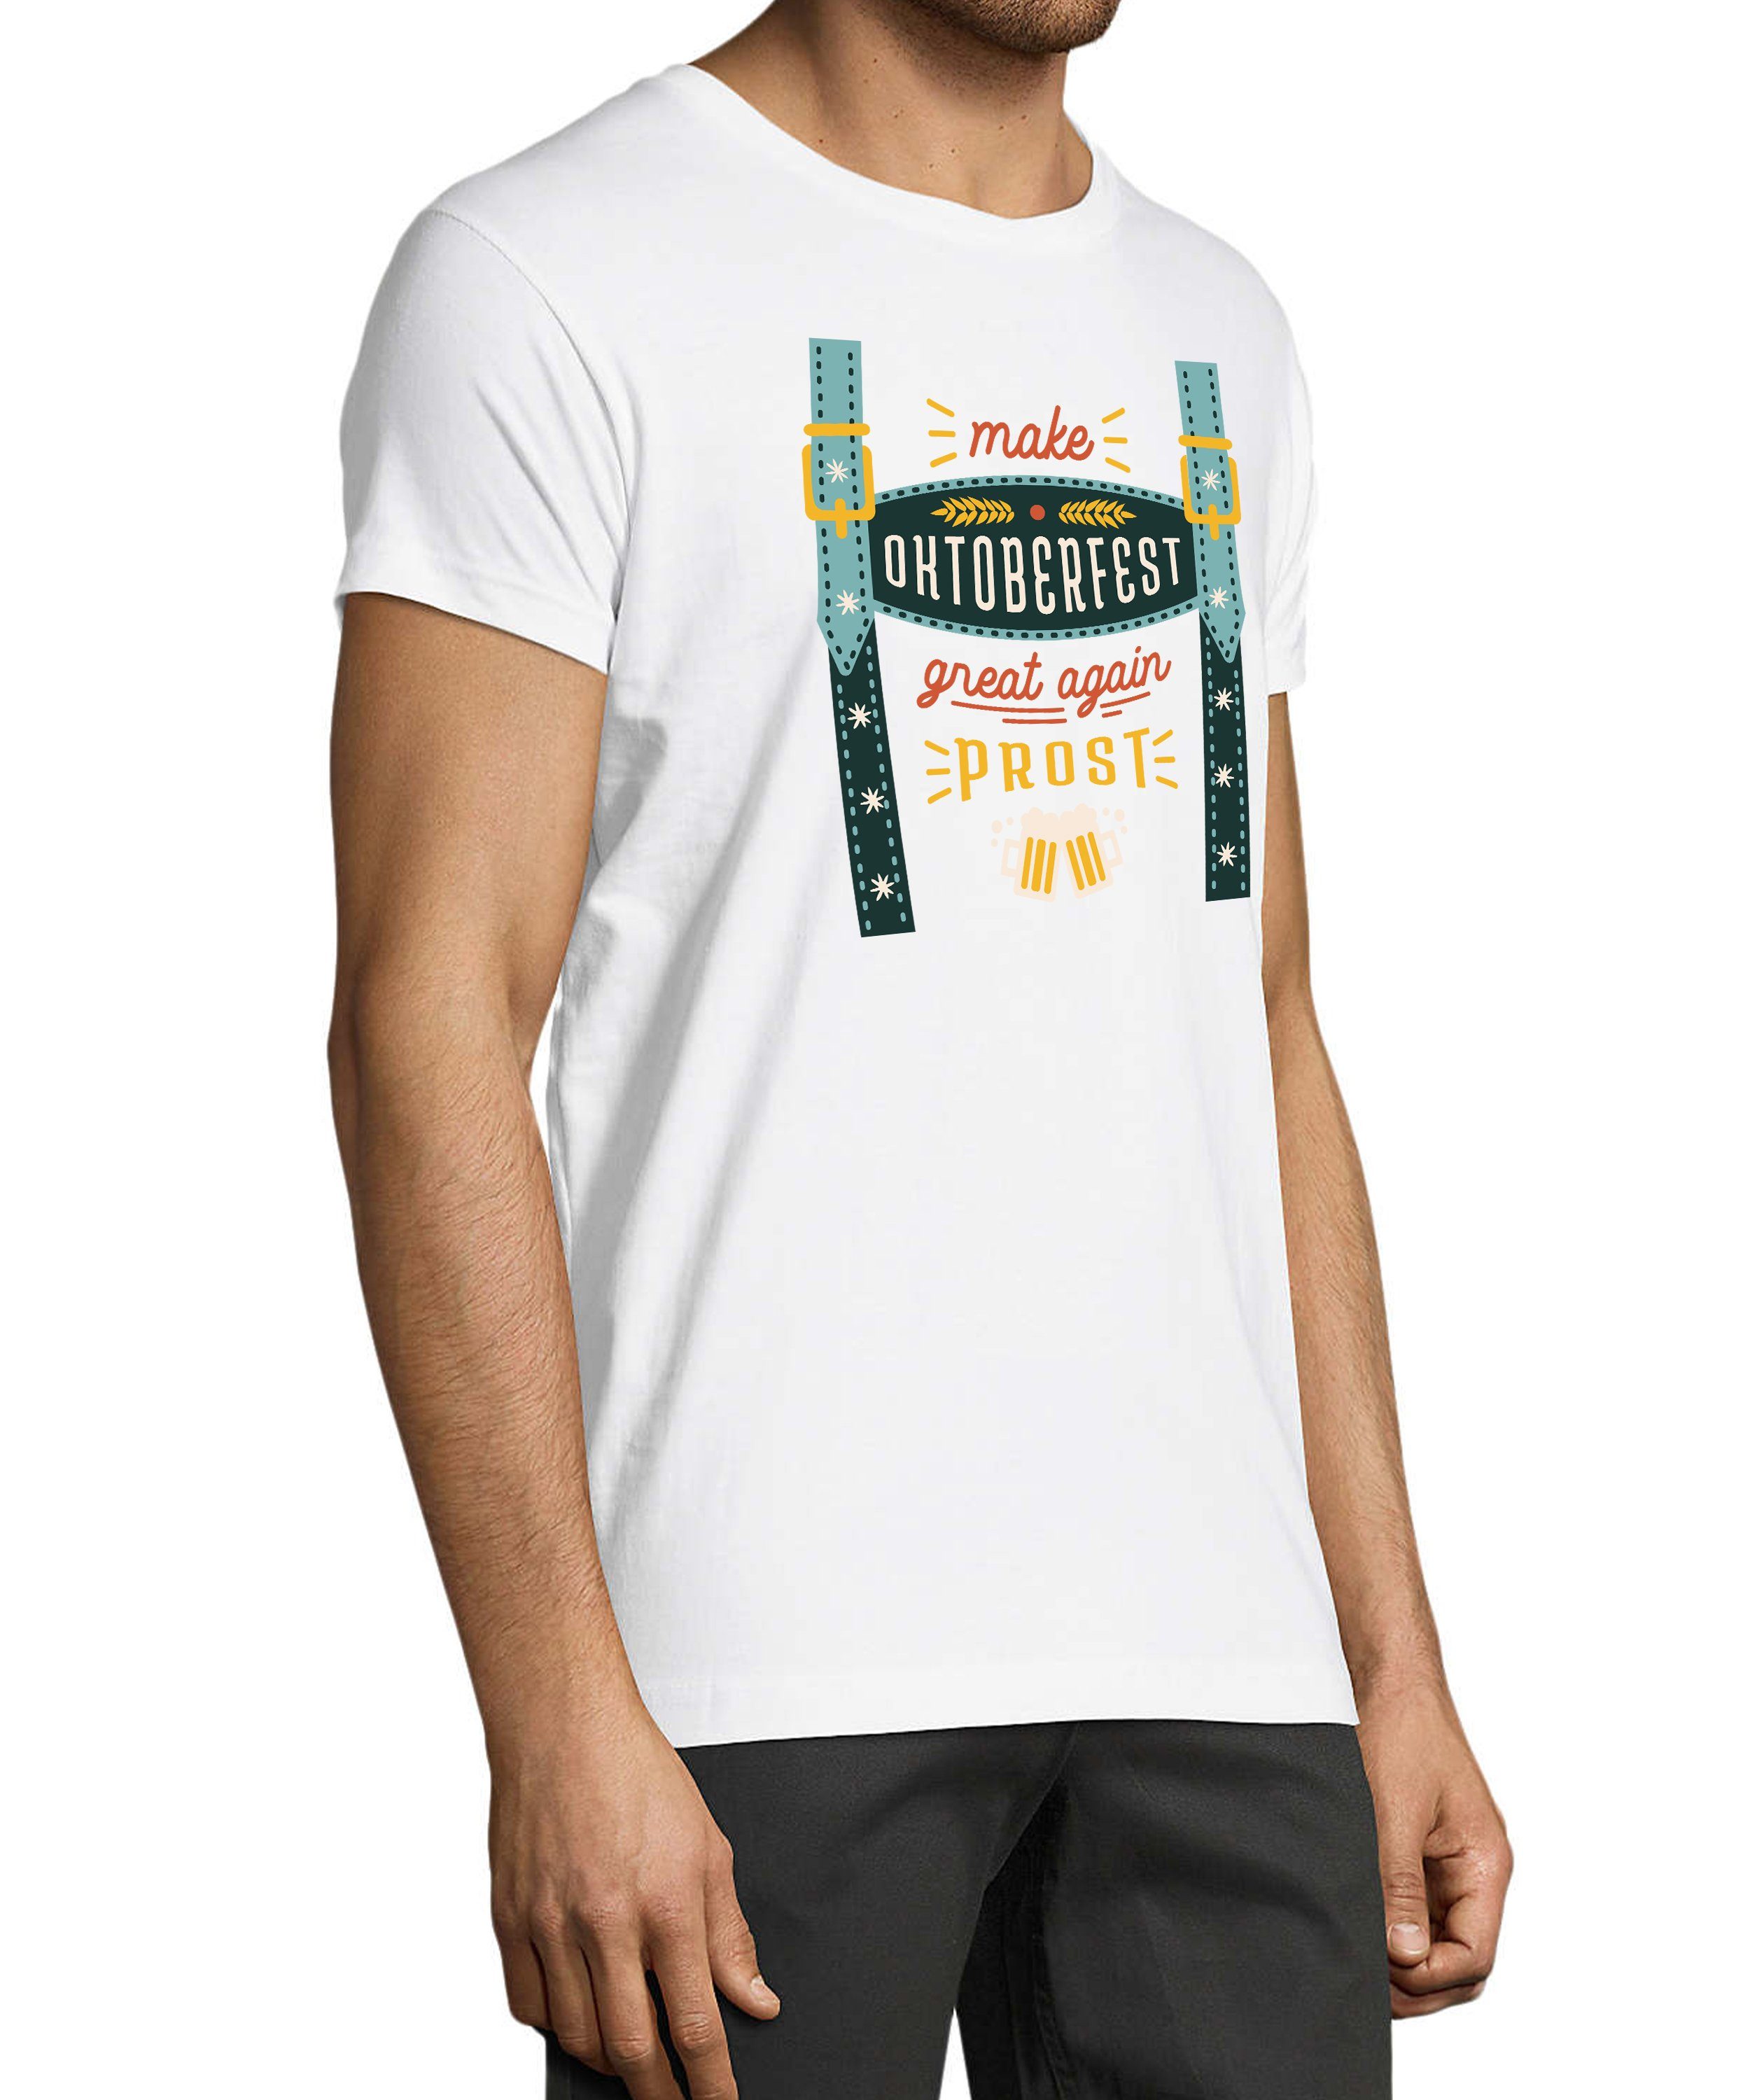 Fit, T-Shirt Hosenträger Trinkshirt Aufdruck T-Shirt Baumwollshirt Print Shirt Herren Regular Fun mit Oktoberfest MyDesign24 weiss - i317